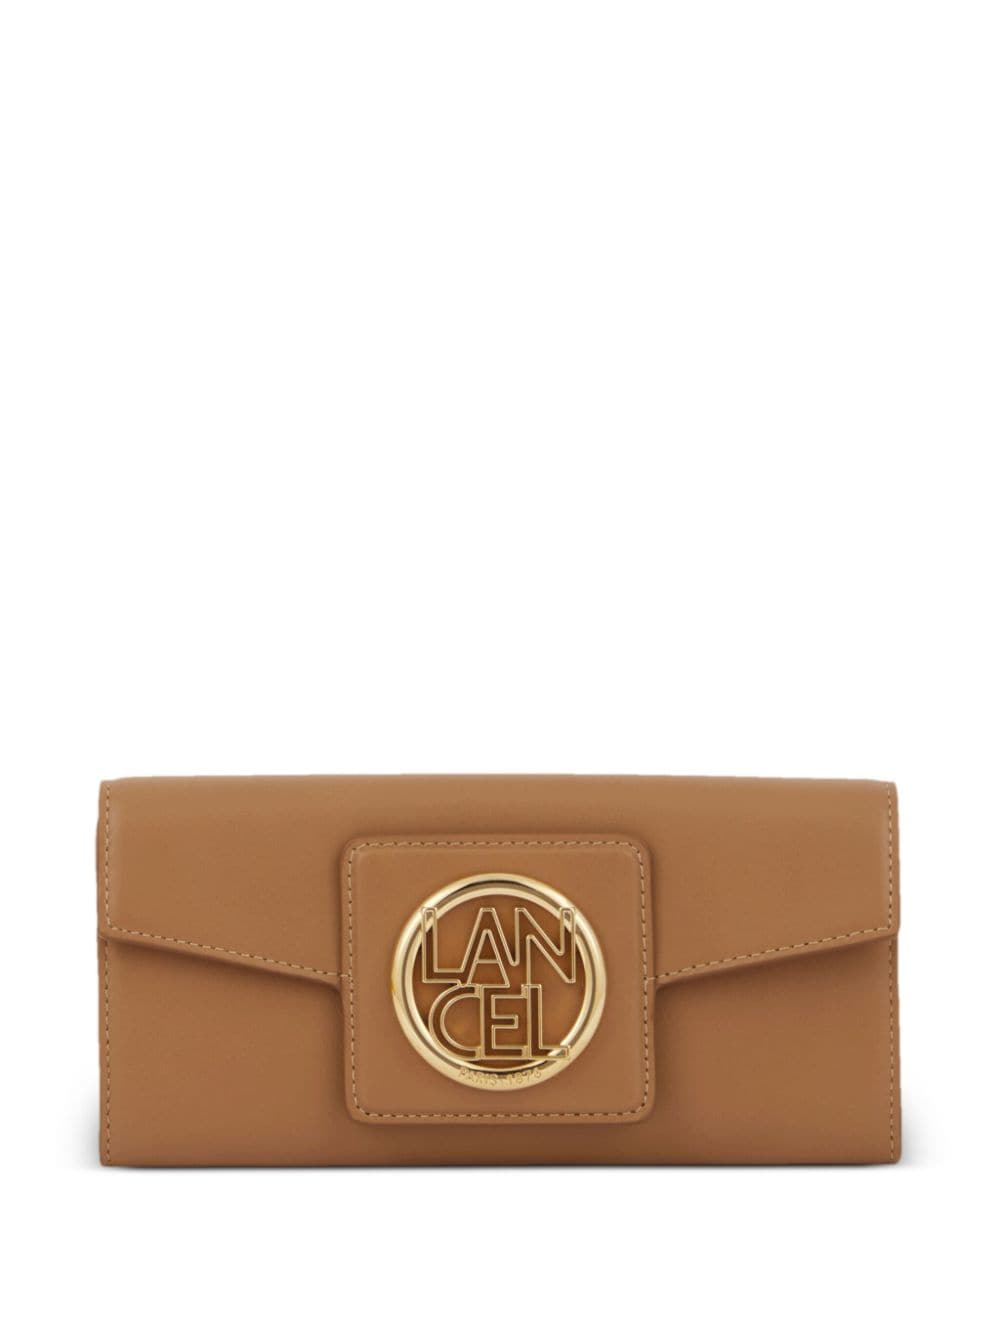 Lancel Roxanne leather flap wallet - Brown von Lancel